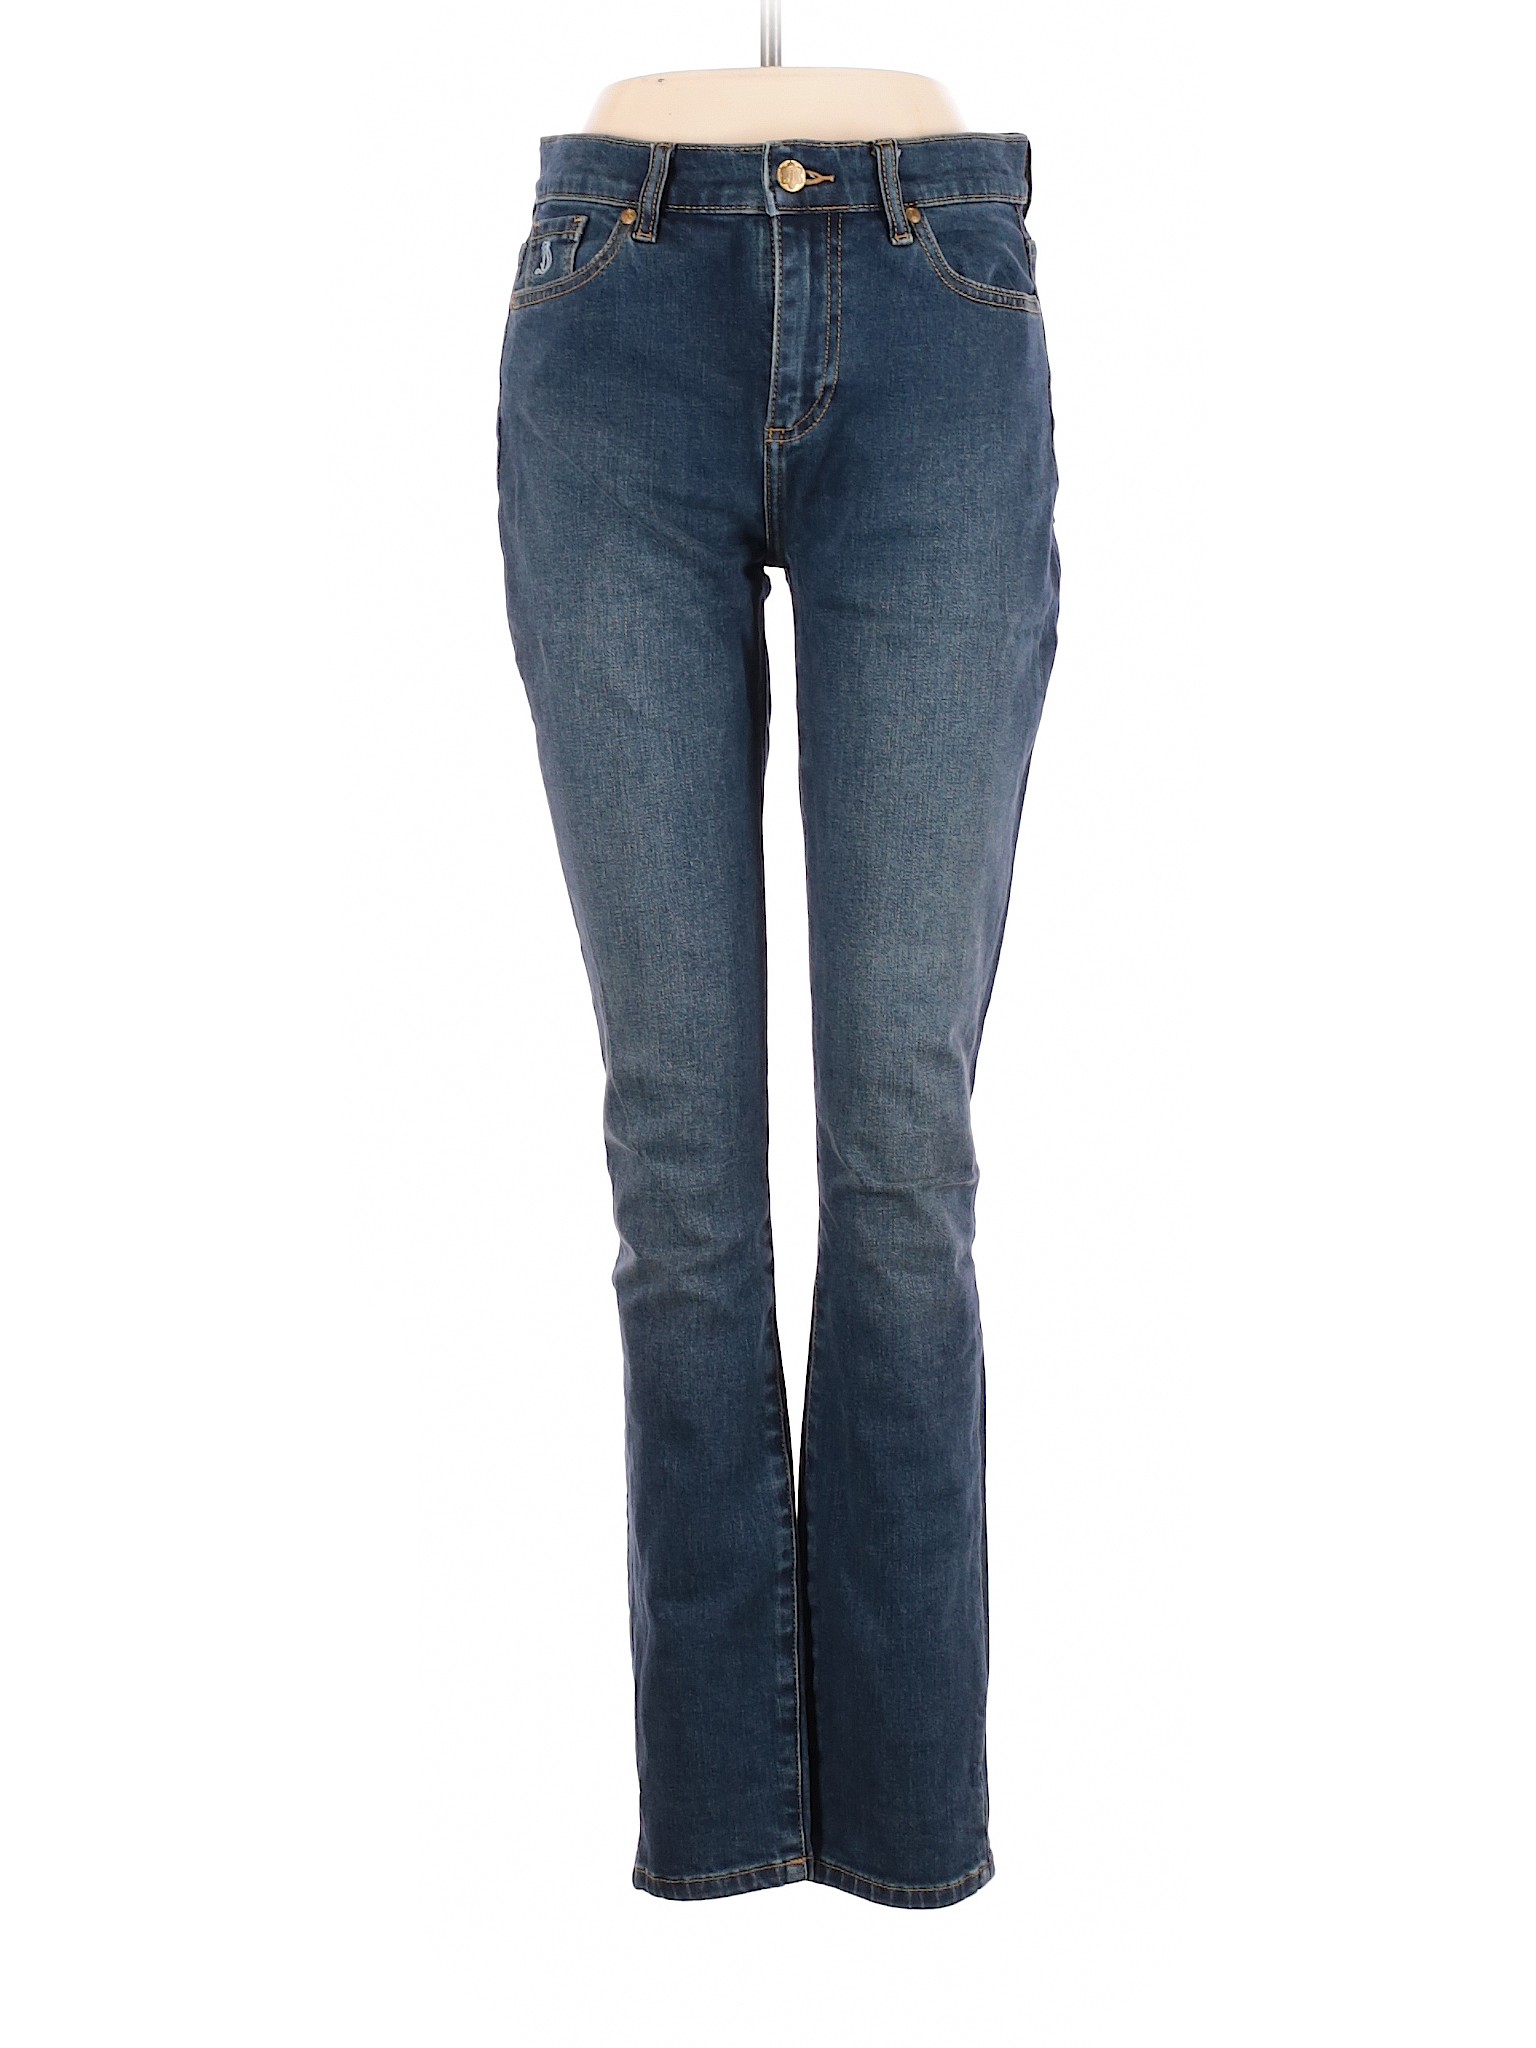 Draper James Women Blue Jeans 28W | eBay